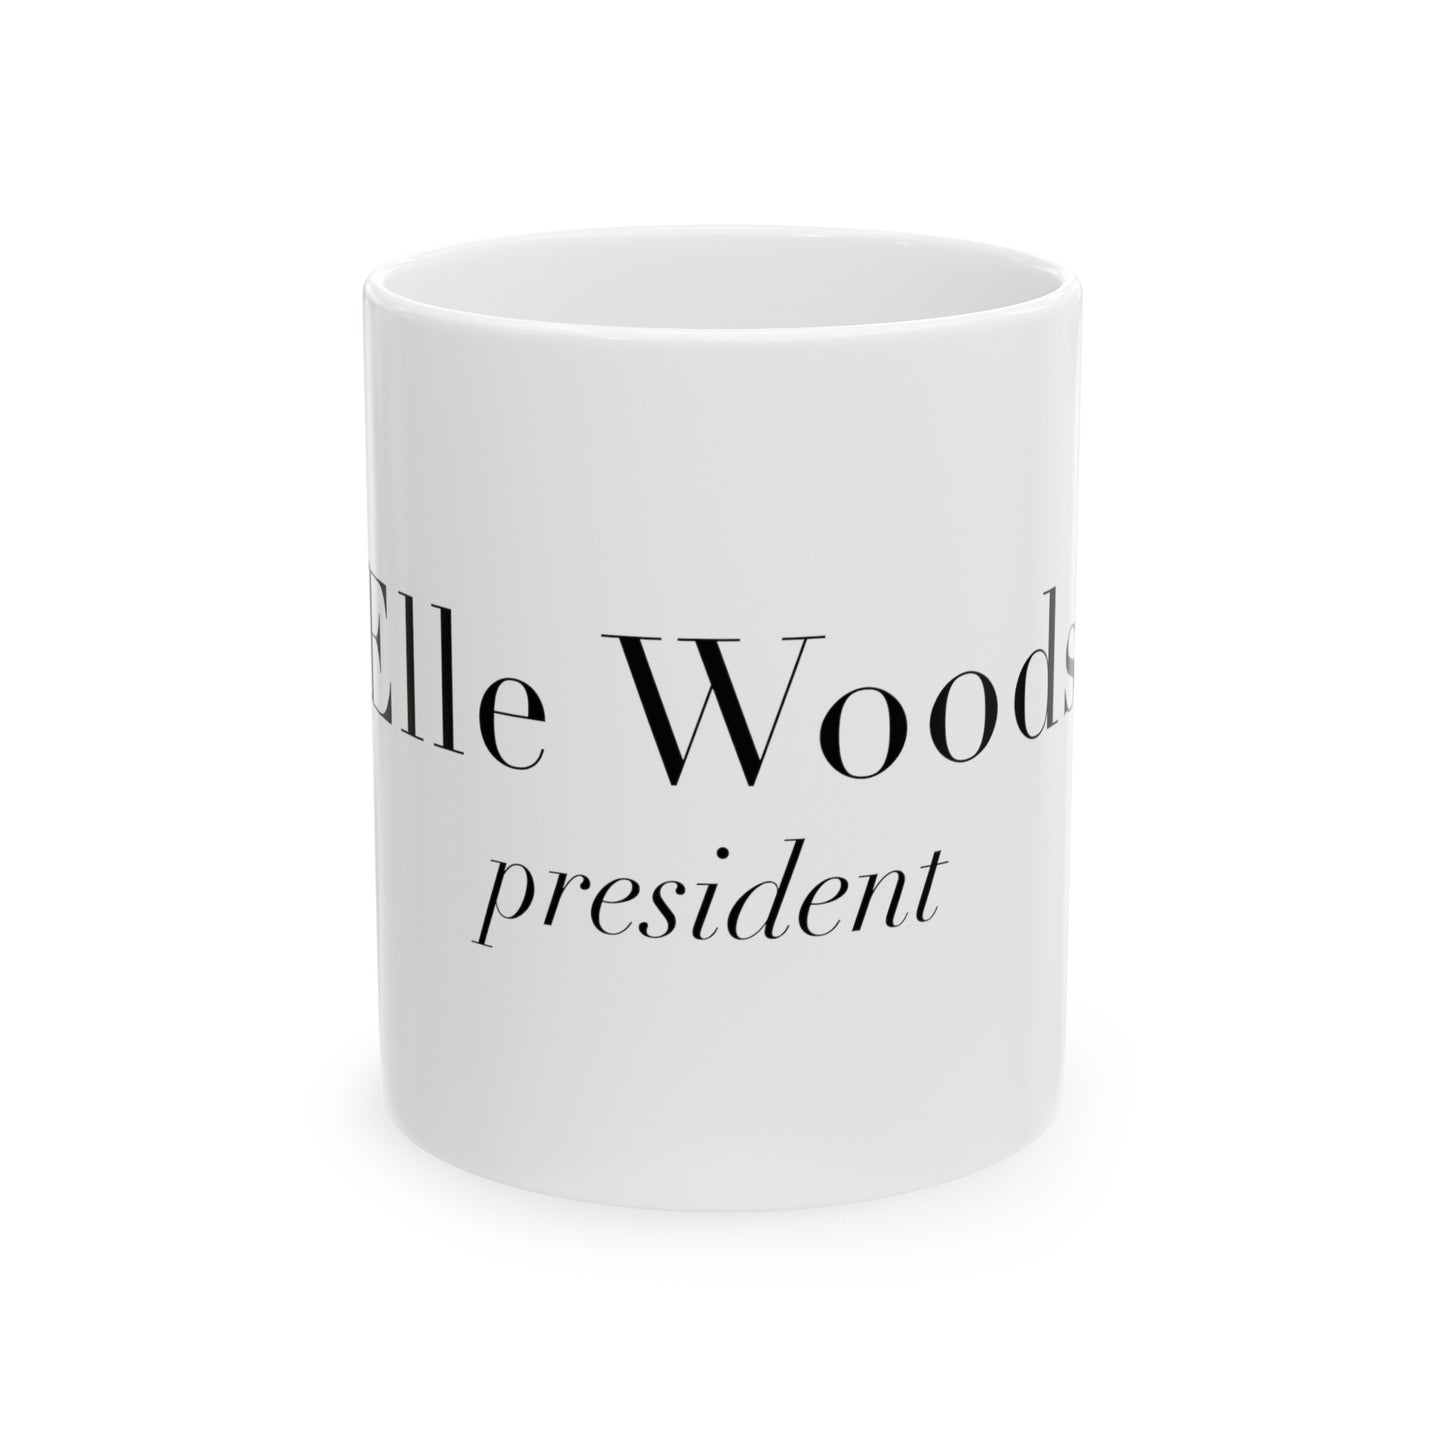 Elle for president - Mug